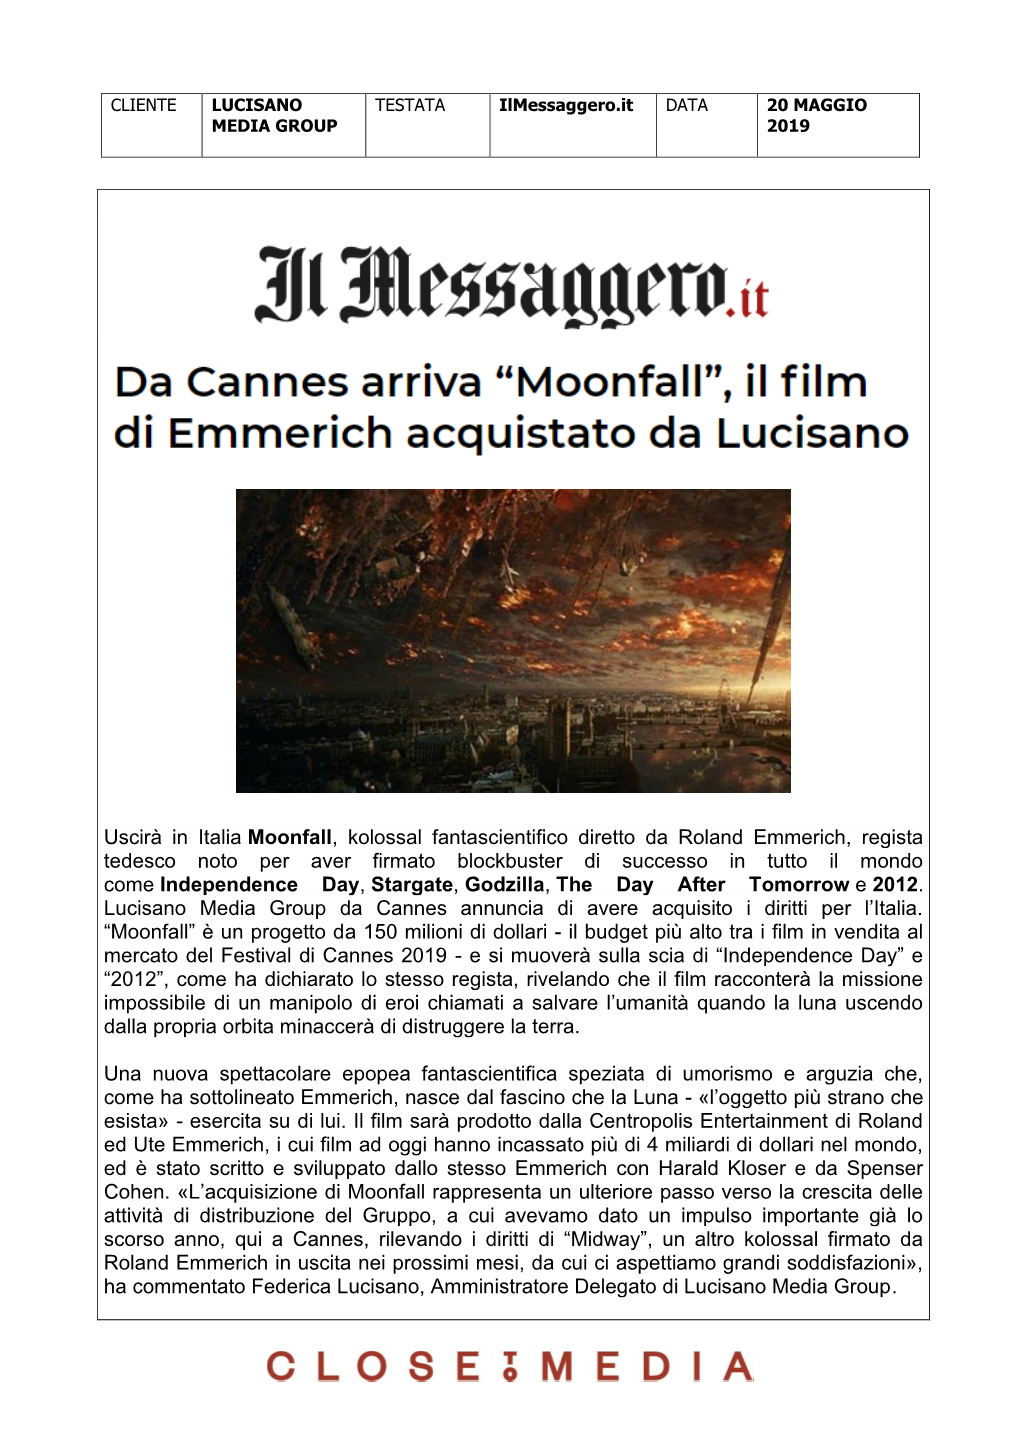 Uscirà in Italia Moonfall, Kolossal Fantascientifico Diretto Da Roland